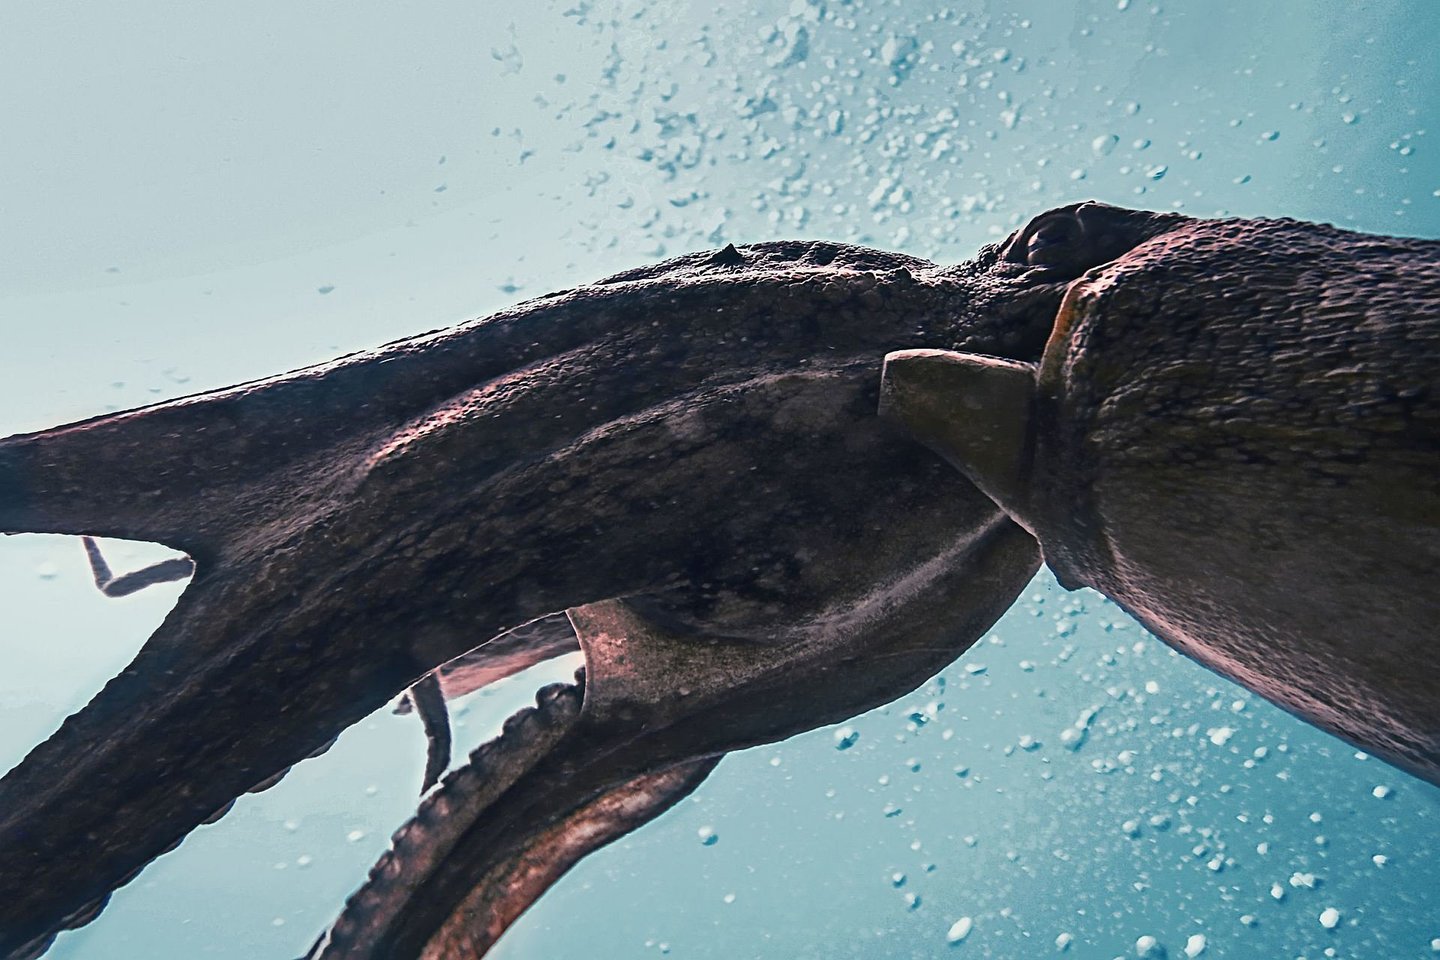  Svarbios paslaptingų gigantiškojo kalmaro (Architeuthisdux) anatomijos ir evoliucijos užuominos atskleidžiamos jo genome.<br> 123RF iliustr.